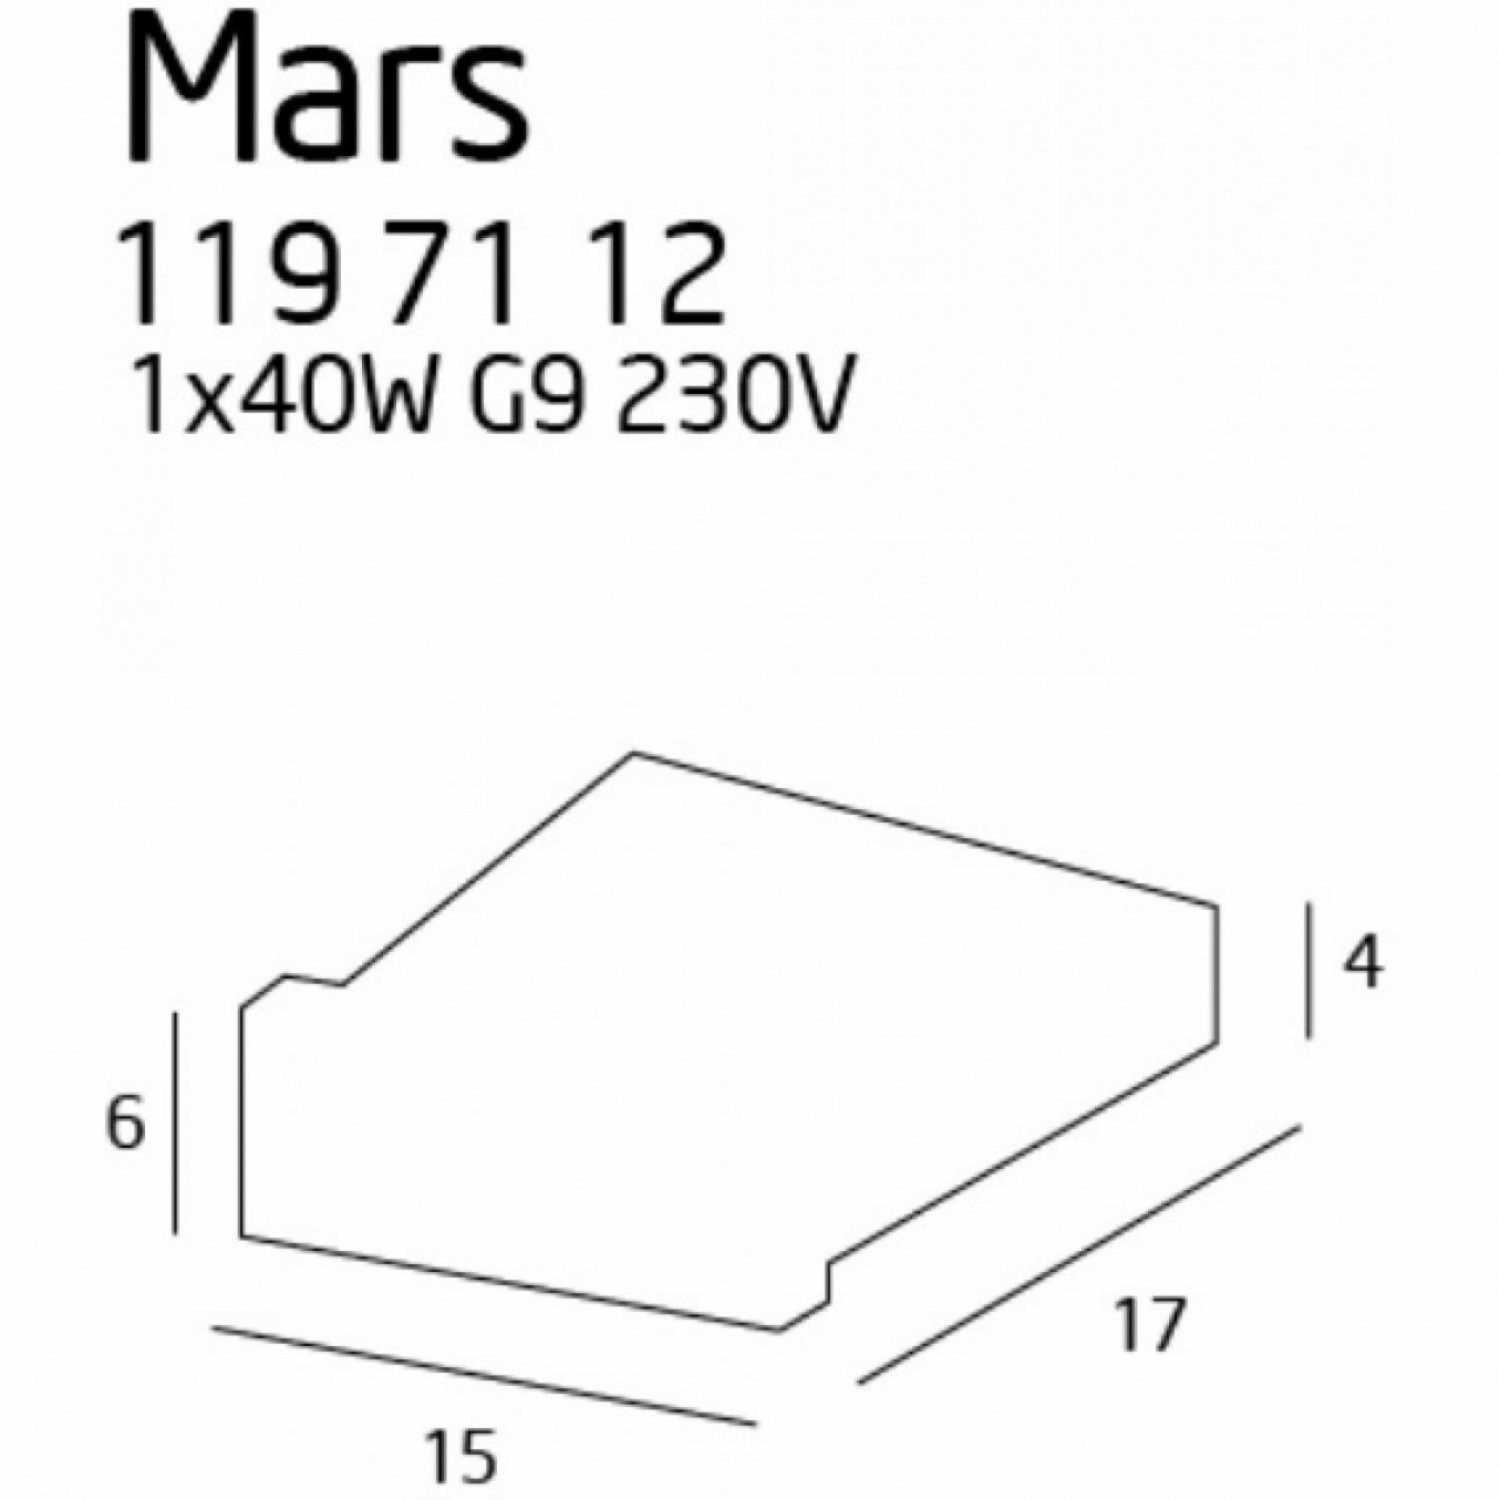 Архитектурное освещение MaxLight MARS 119 71 12